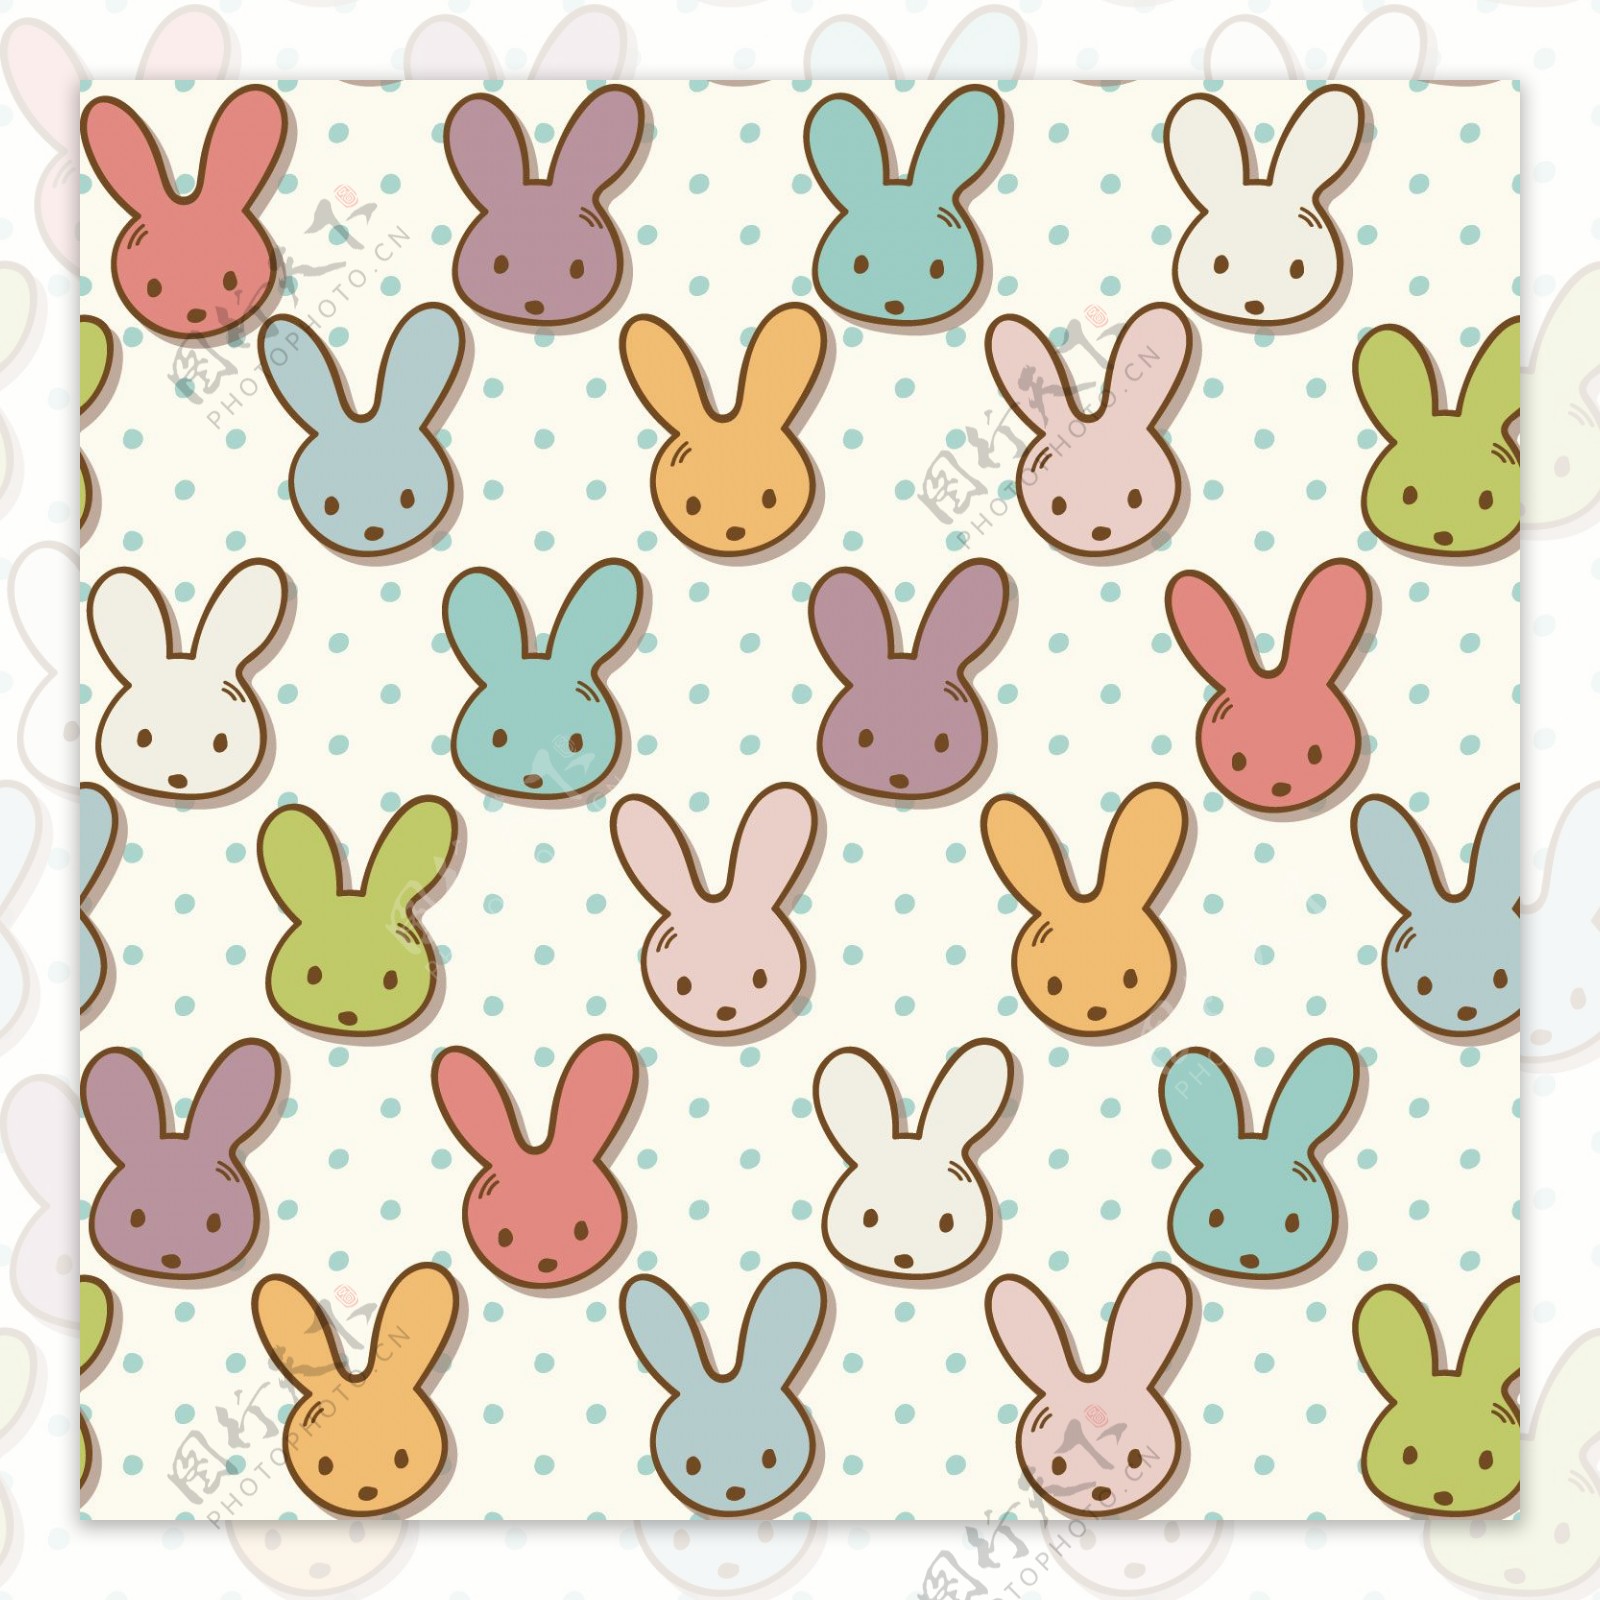 彩色兔子清新壁纸图案装饰设计